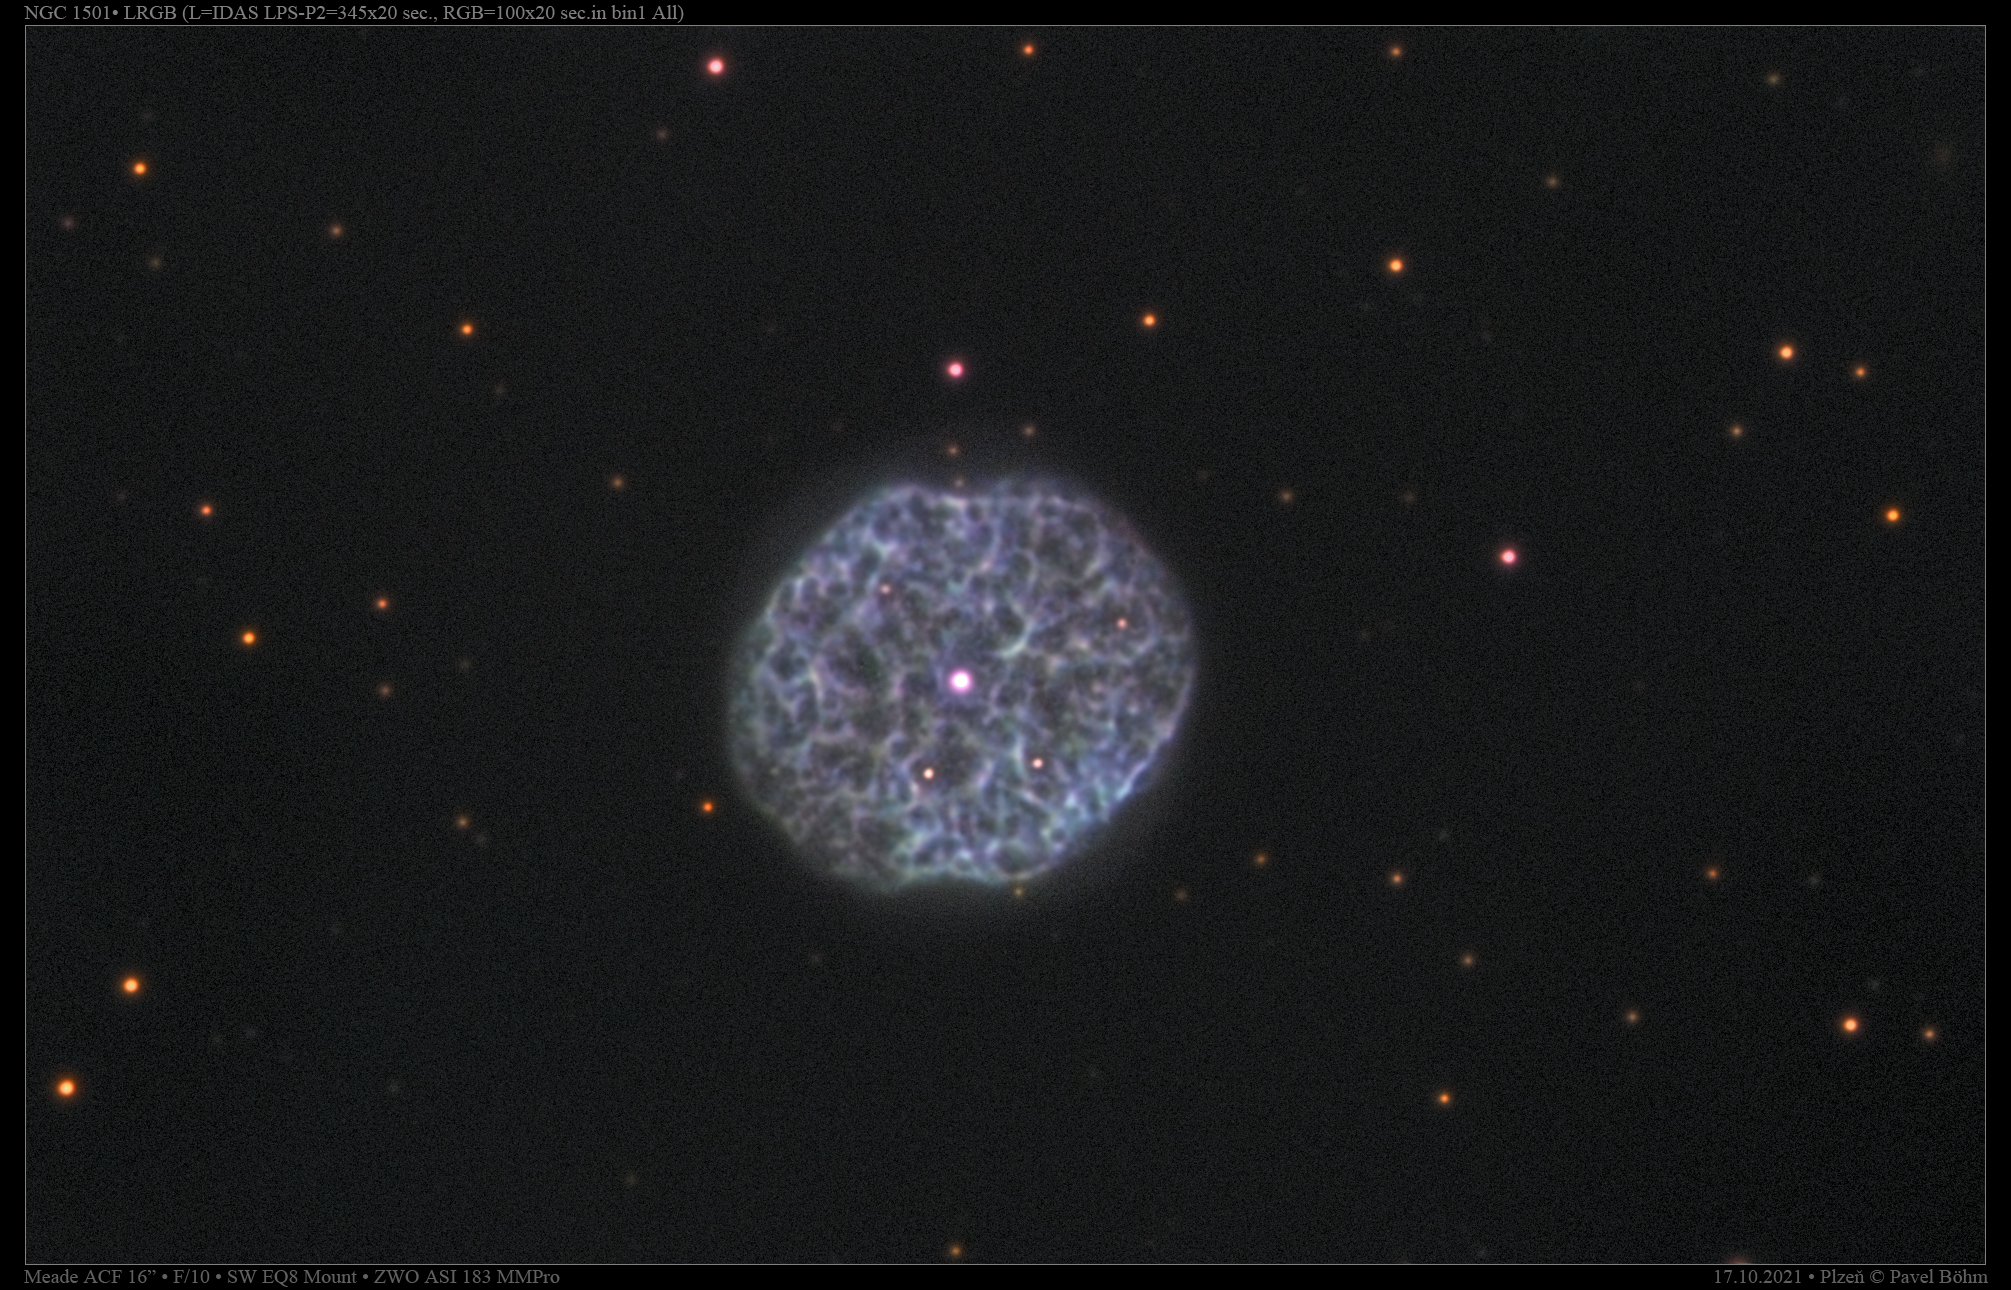 NGC1501 LRGB